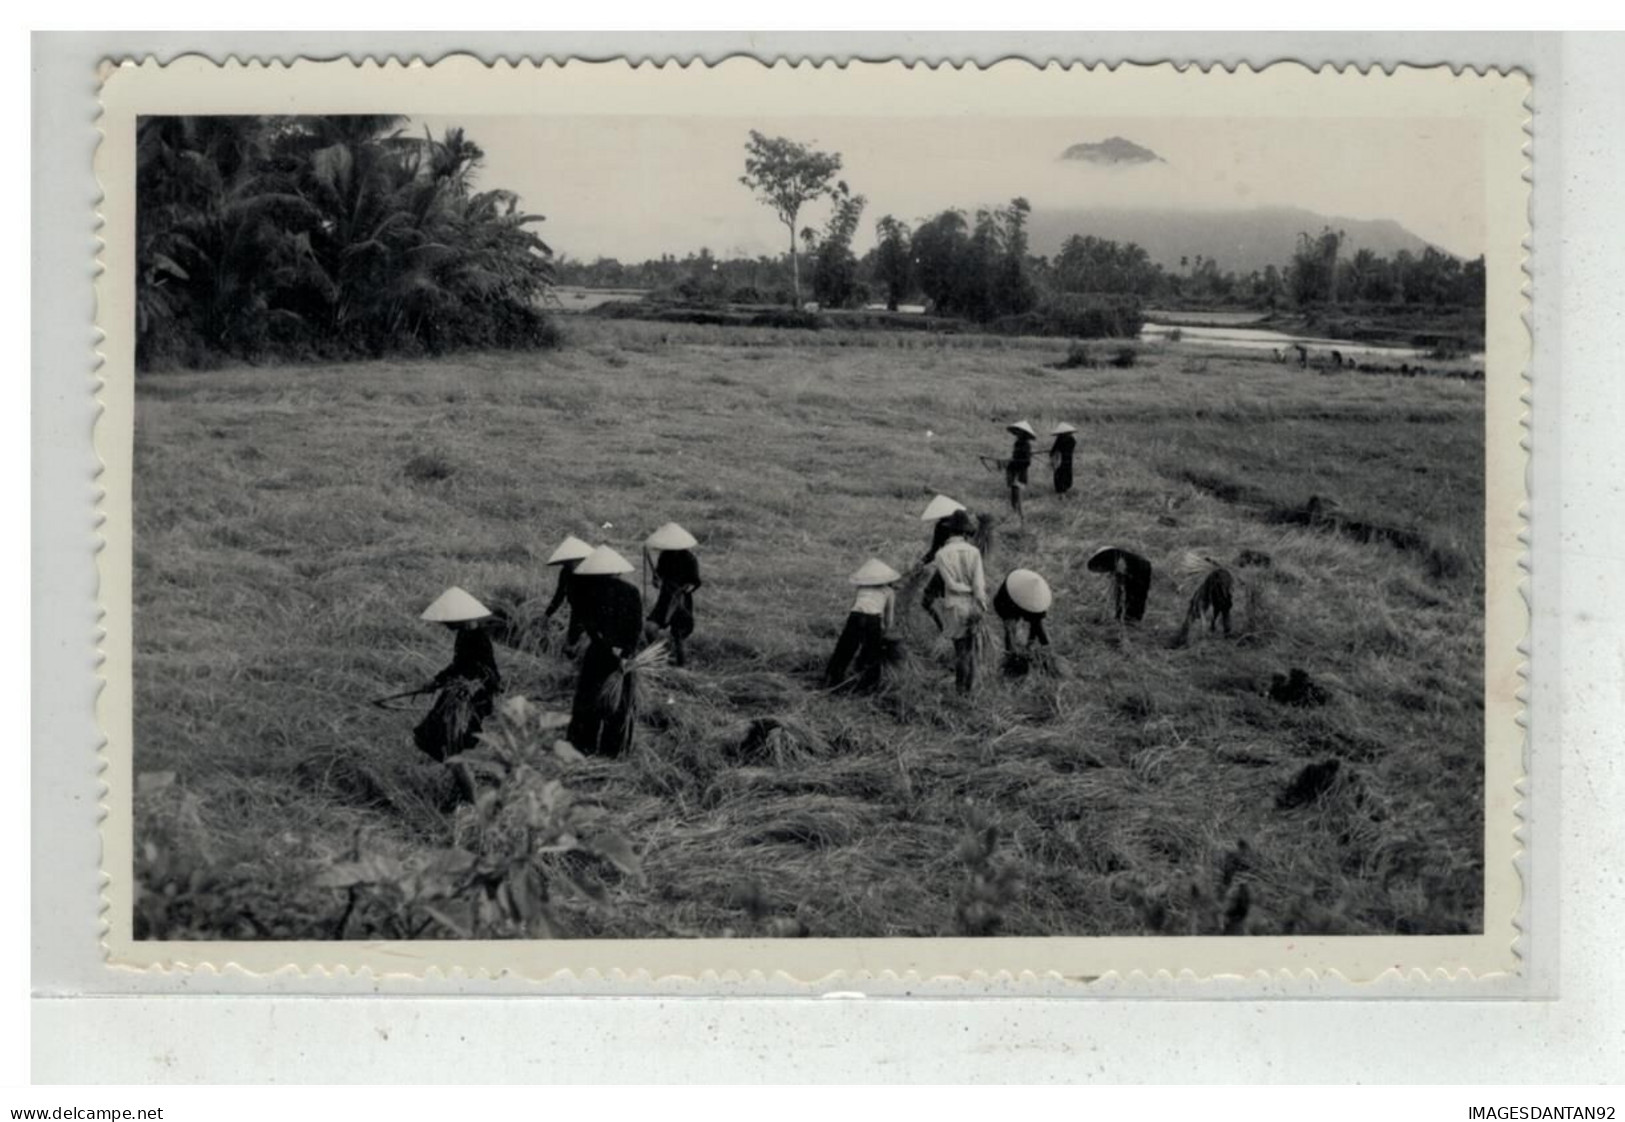 TONKIN INDOCHINE VIETNAM SAIGON #18539 NHA TRANG NHATRANG FENAISON AGRICULTURE CARTE PHOTO - Viêt-Nam